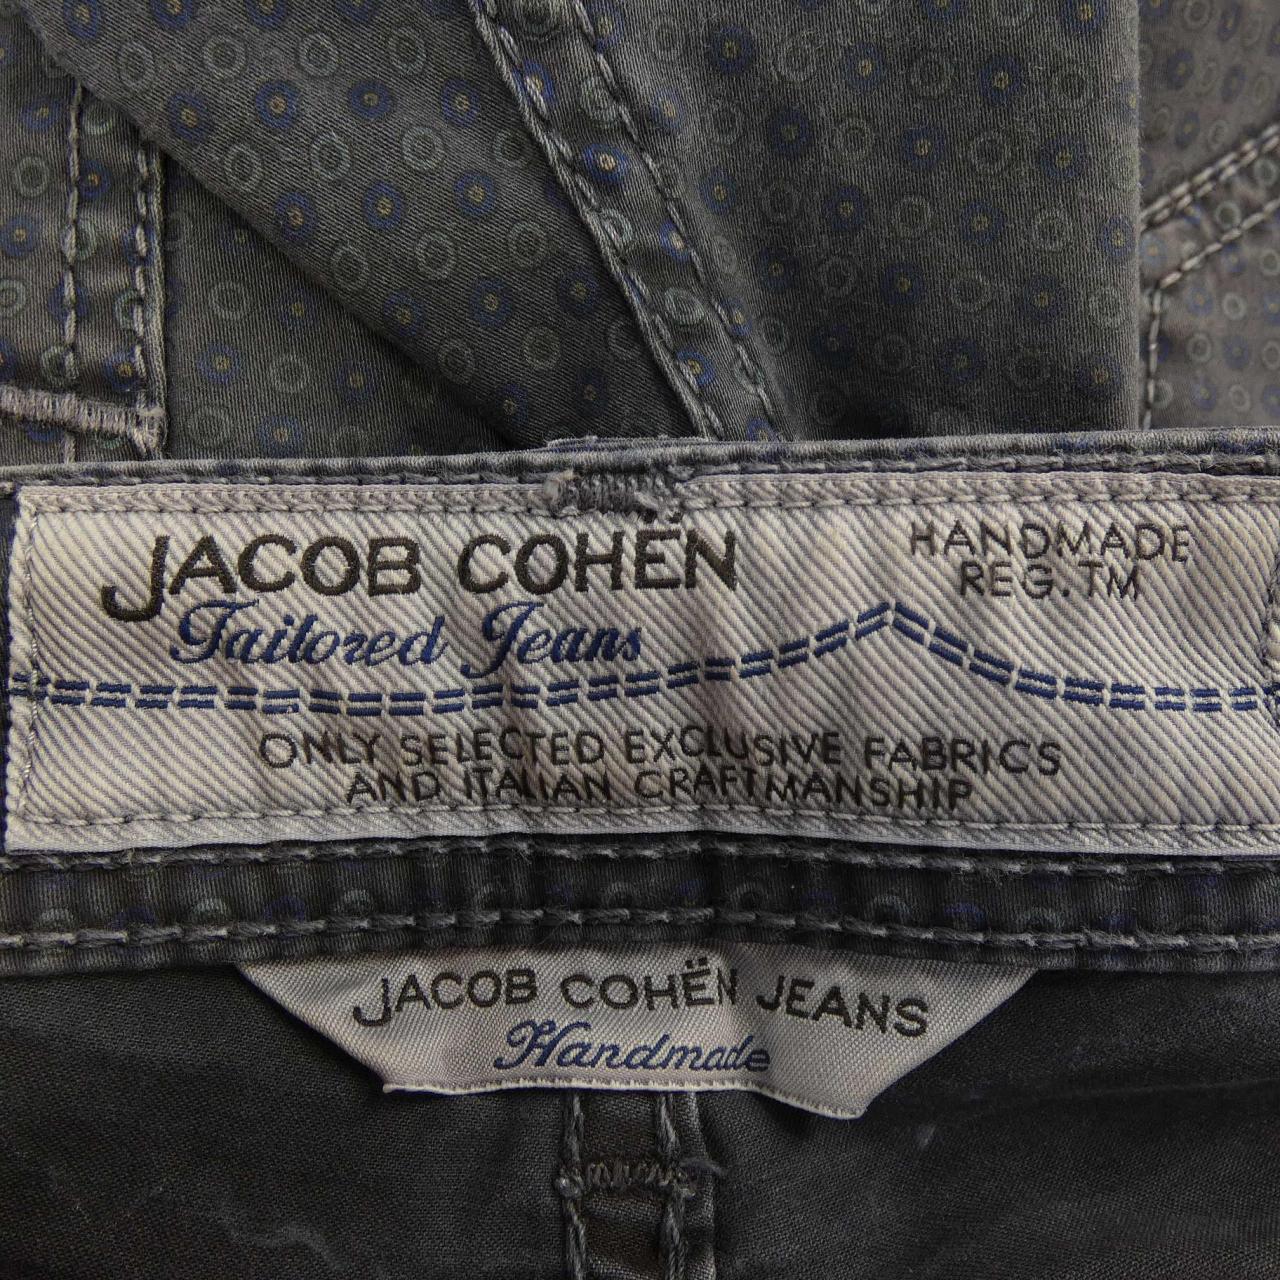 Jacob Cohen jeans